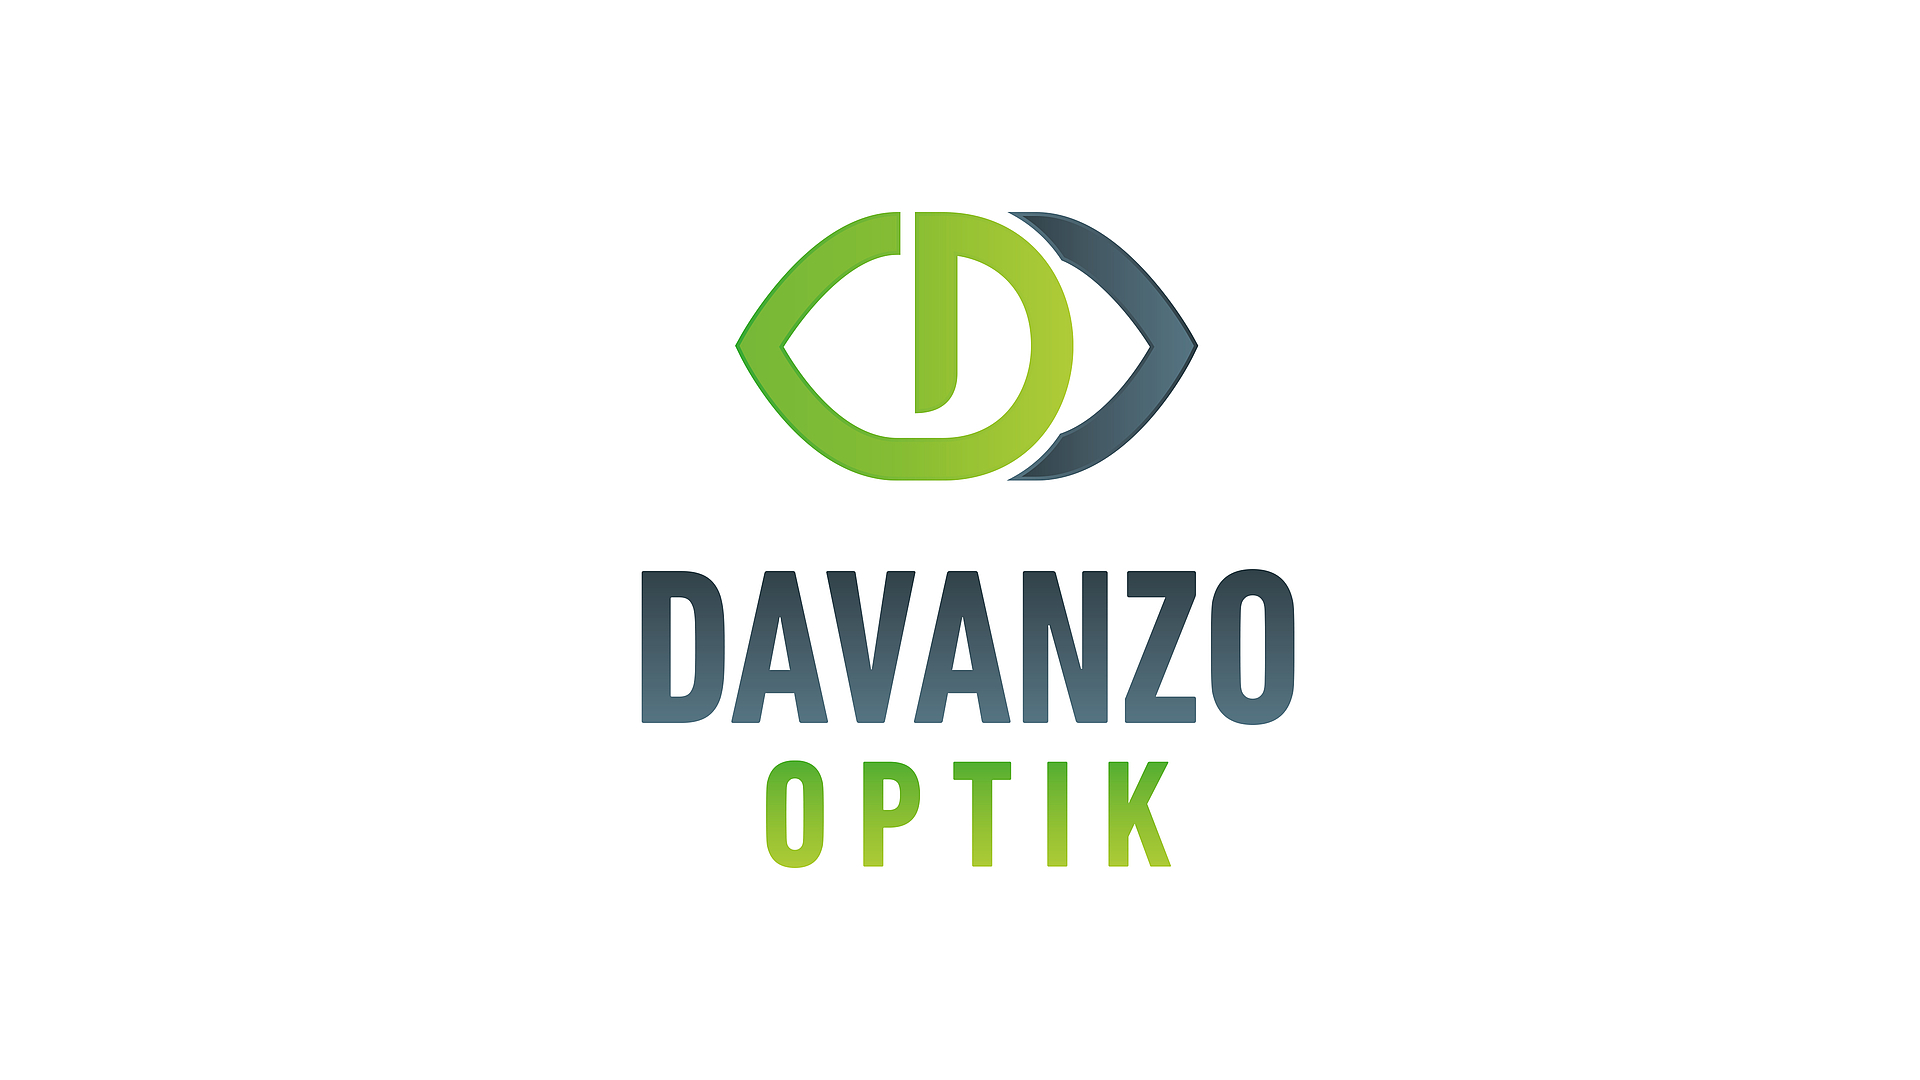 Davanzo-Optik_Mitarbeitervorteile.jpg